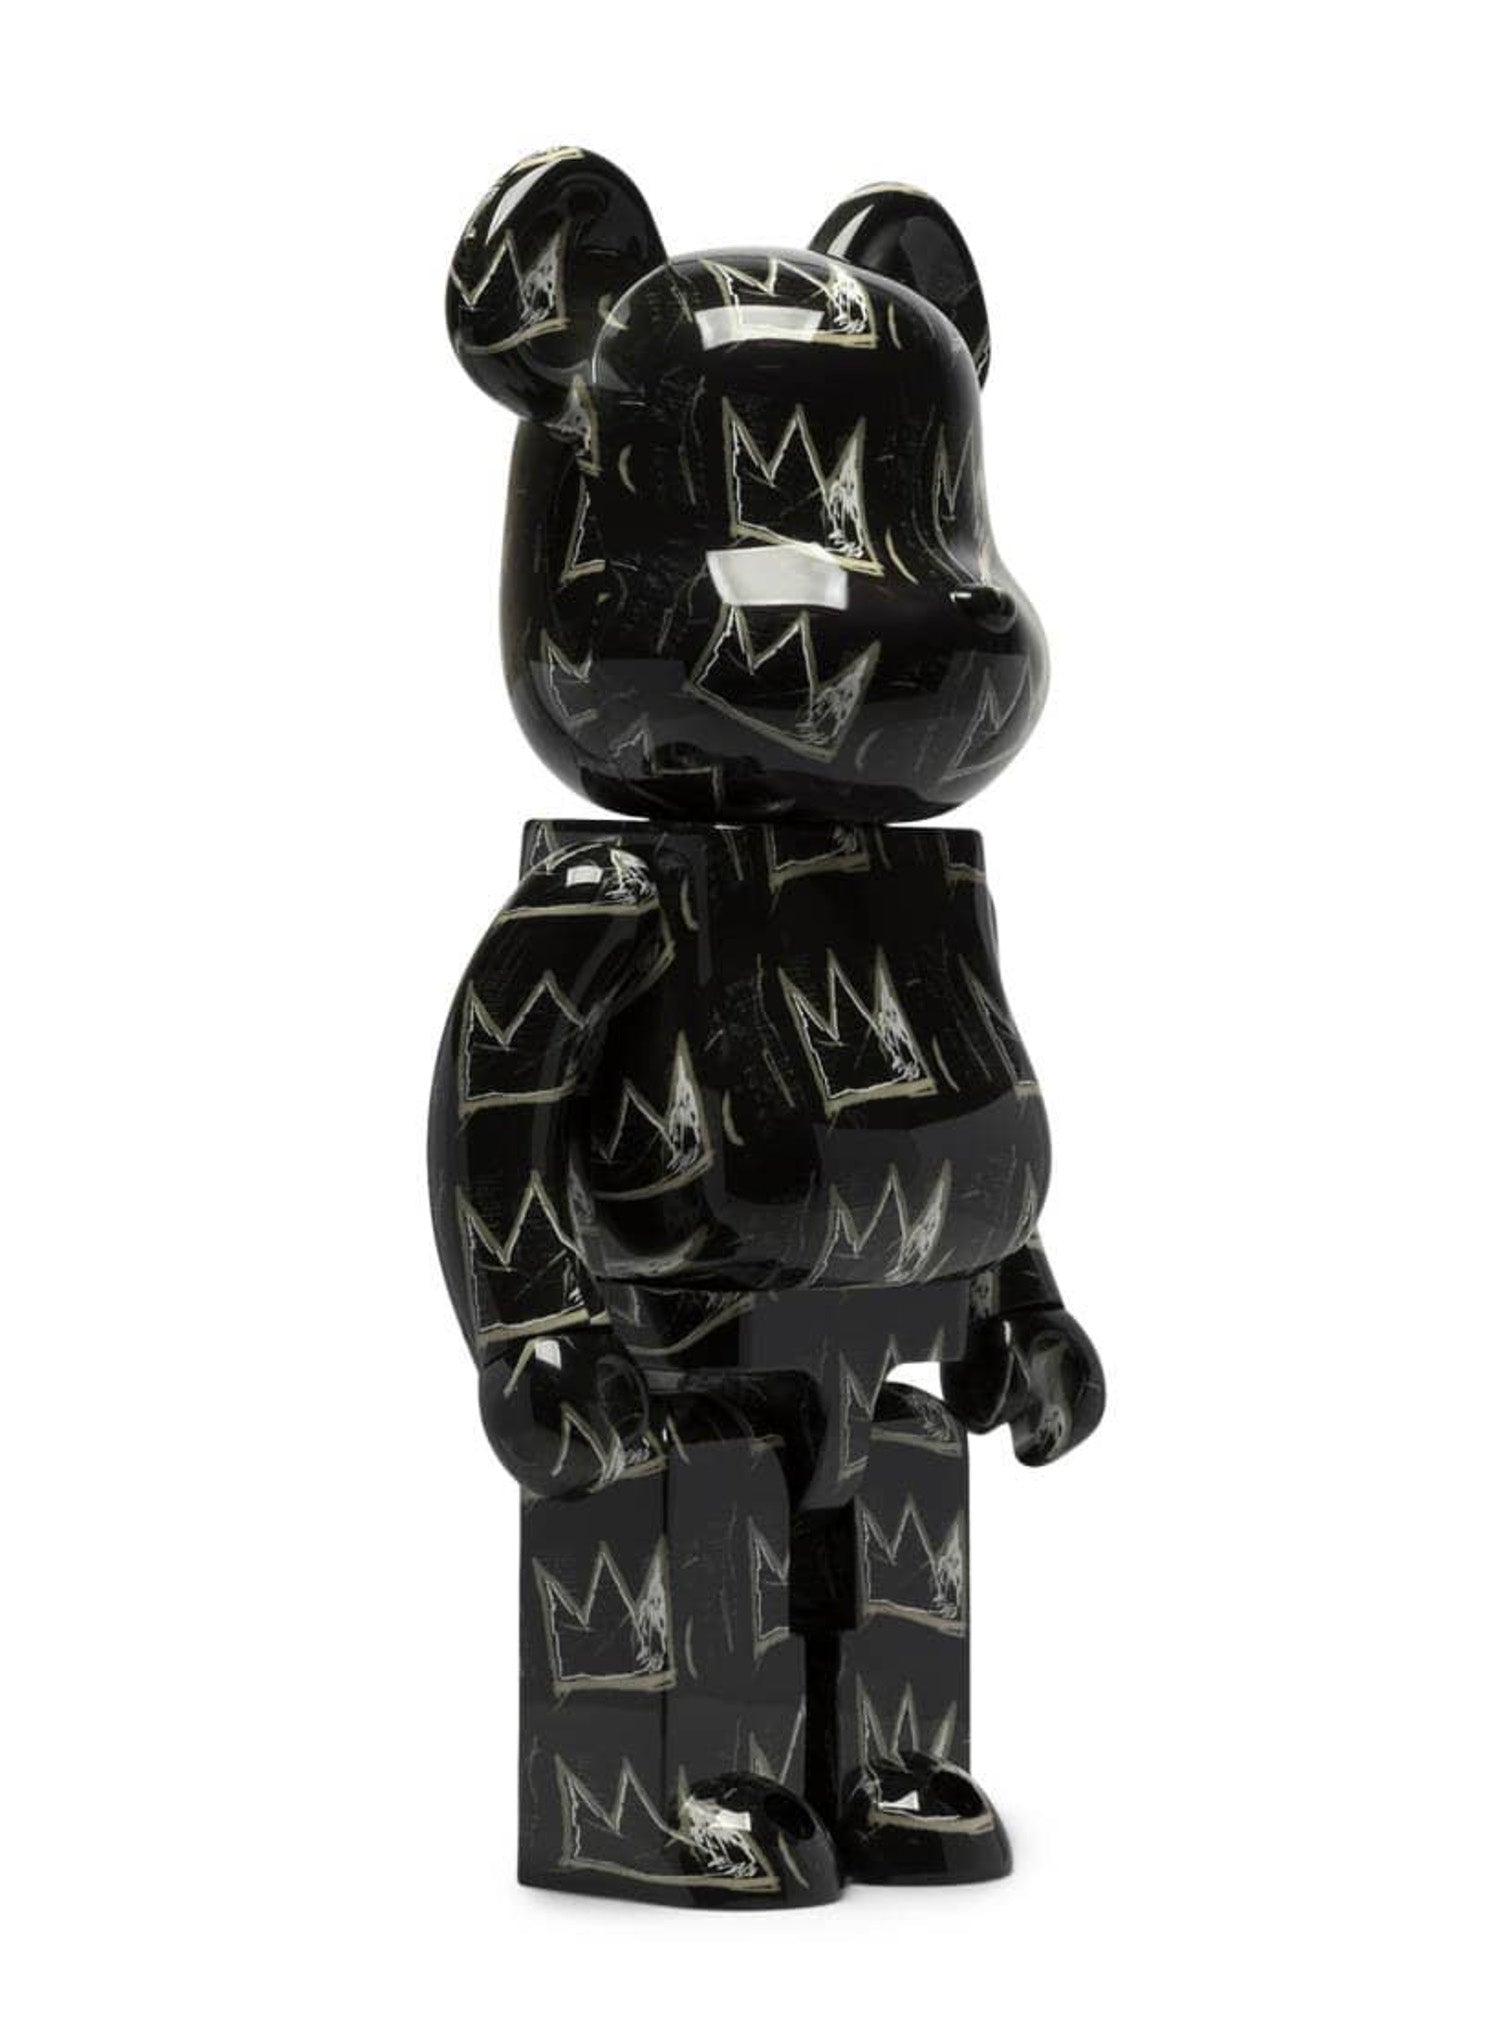 Jean-Michel Basquiat #8 1000% Bearbrick by Medicom Toy